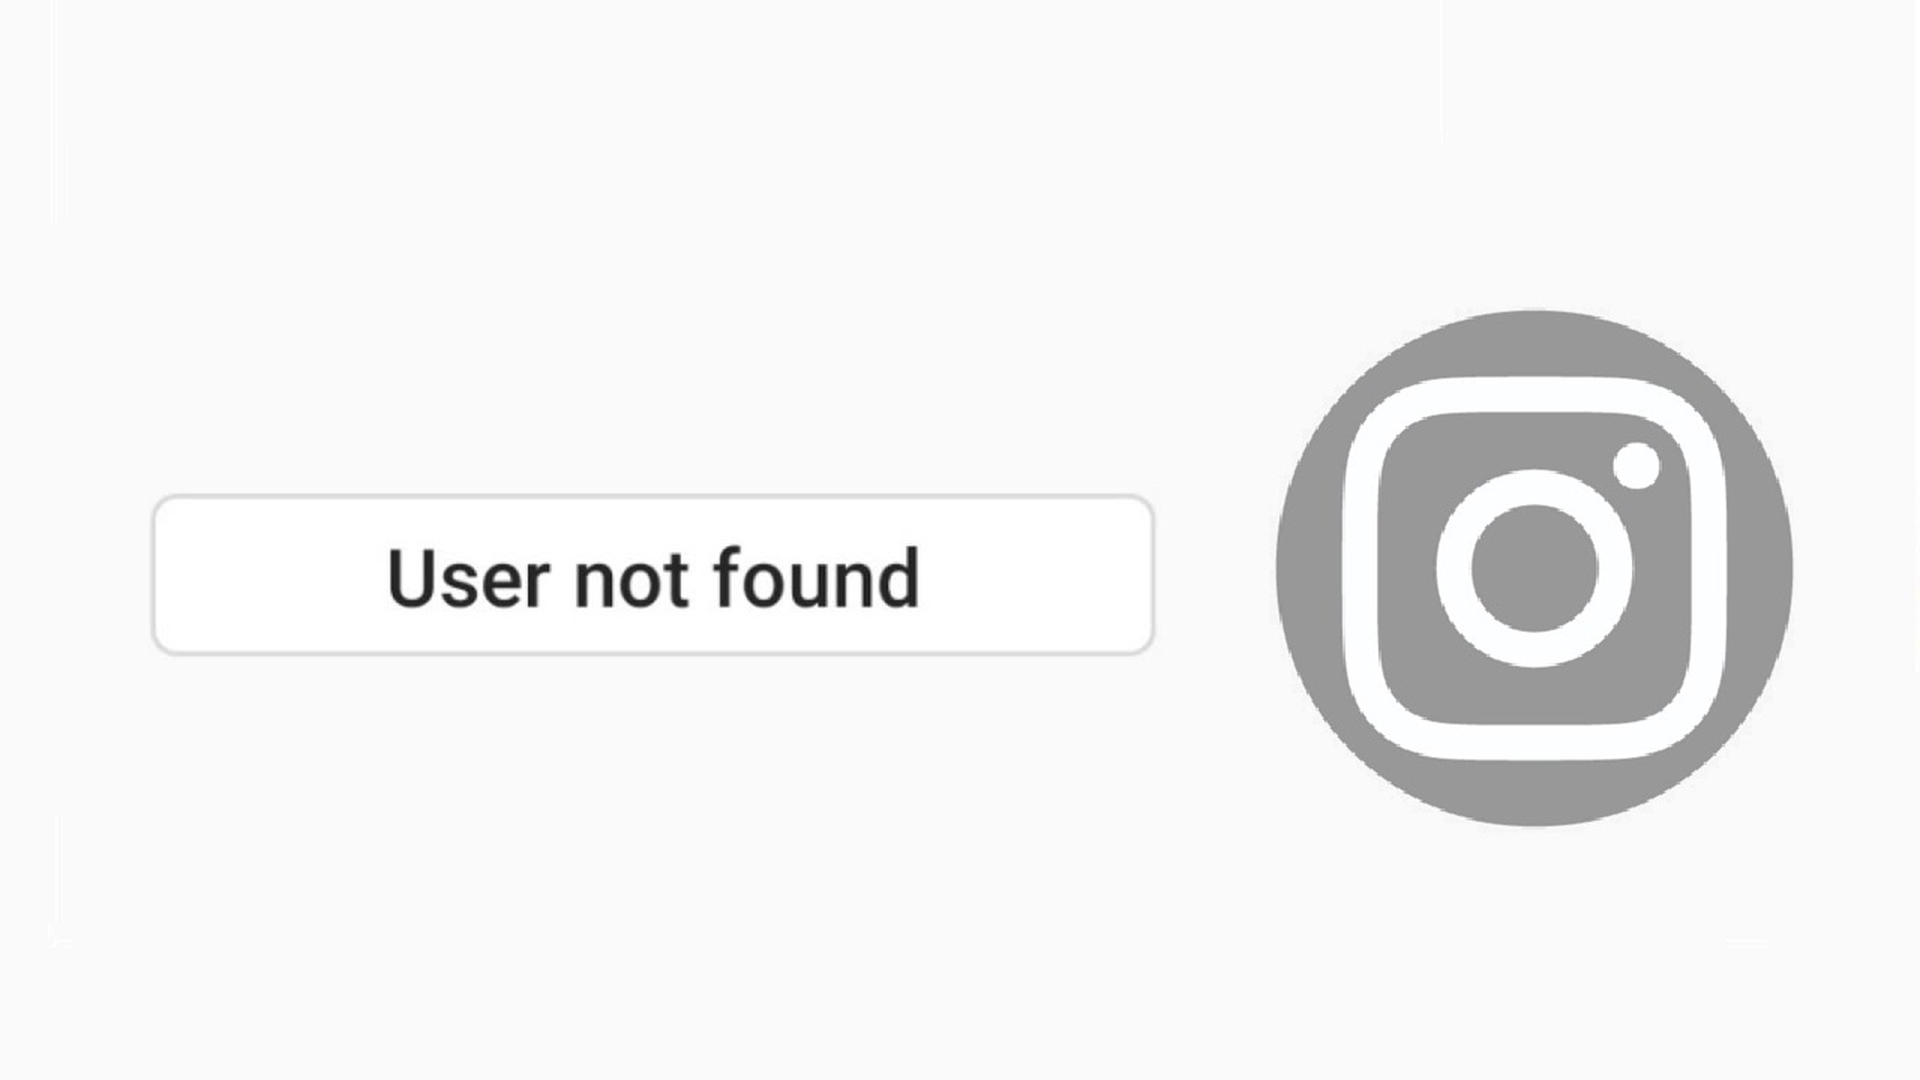 Cosa significa “Utente non trovato” su Instagram?